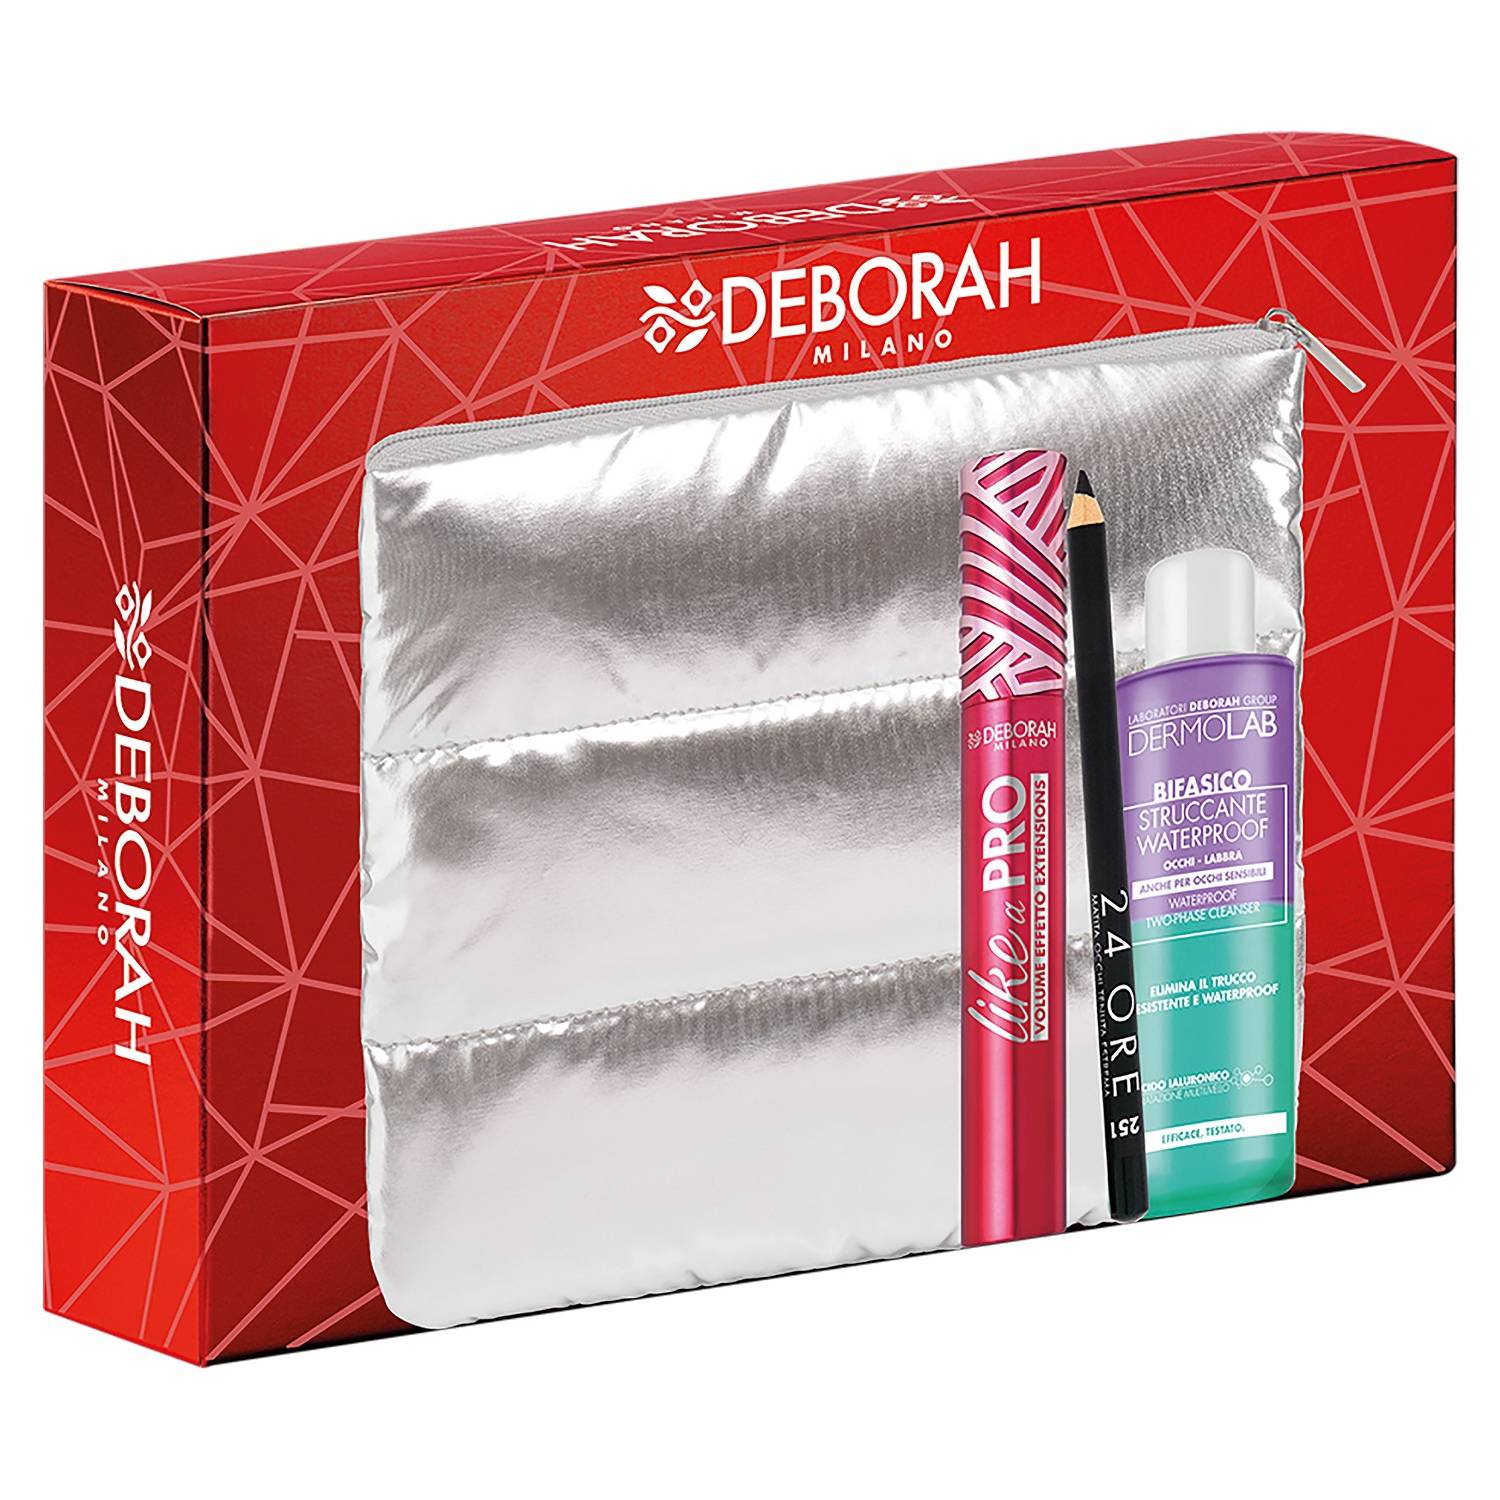 DEBORAH Подарочный набор № 3 в косметичке: тушь для ресниц Like A Pro + карандаш для век + cредство для снятия водостойкого макияжа (DEBORAH, Sets)